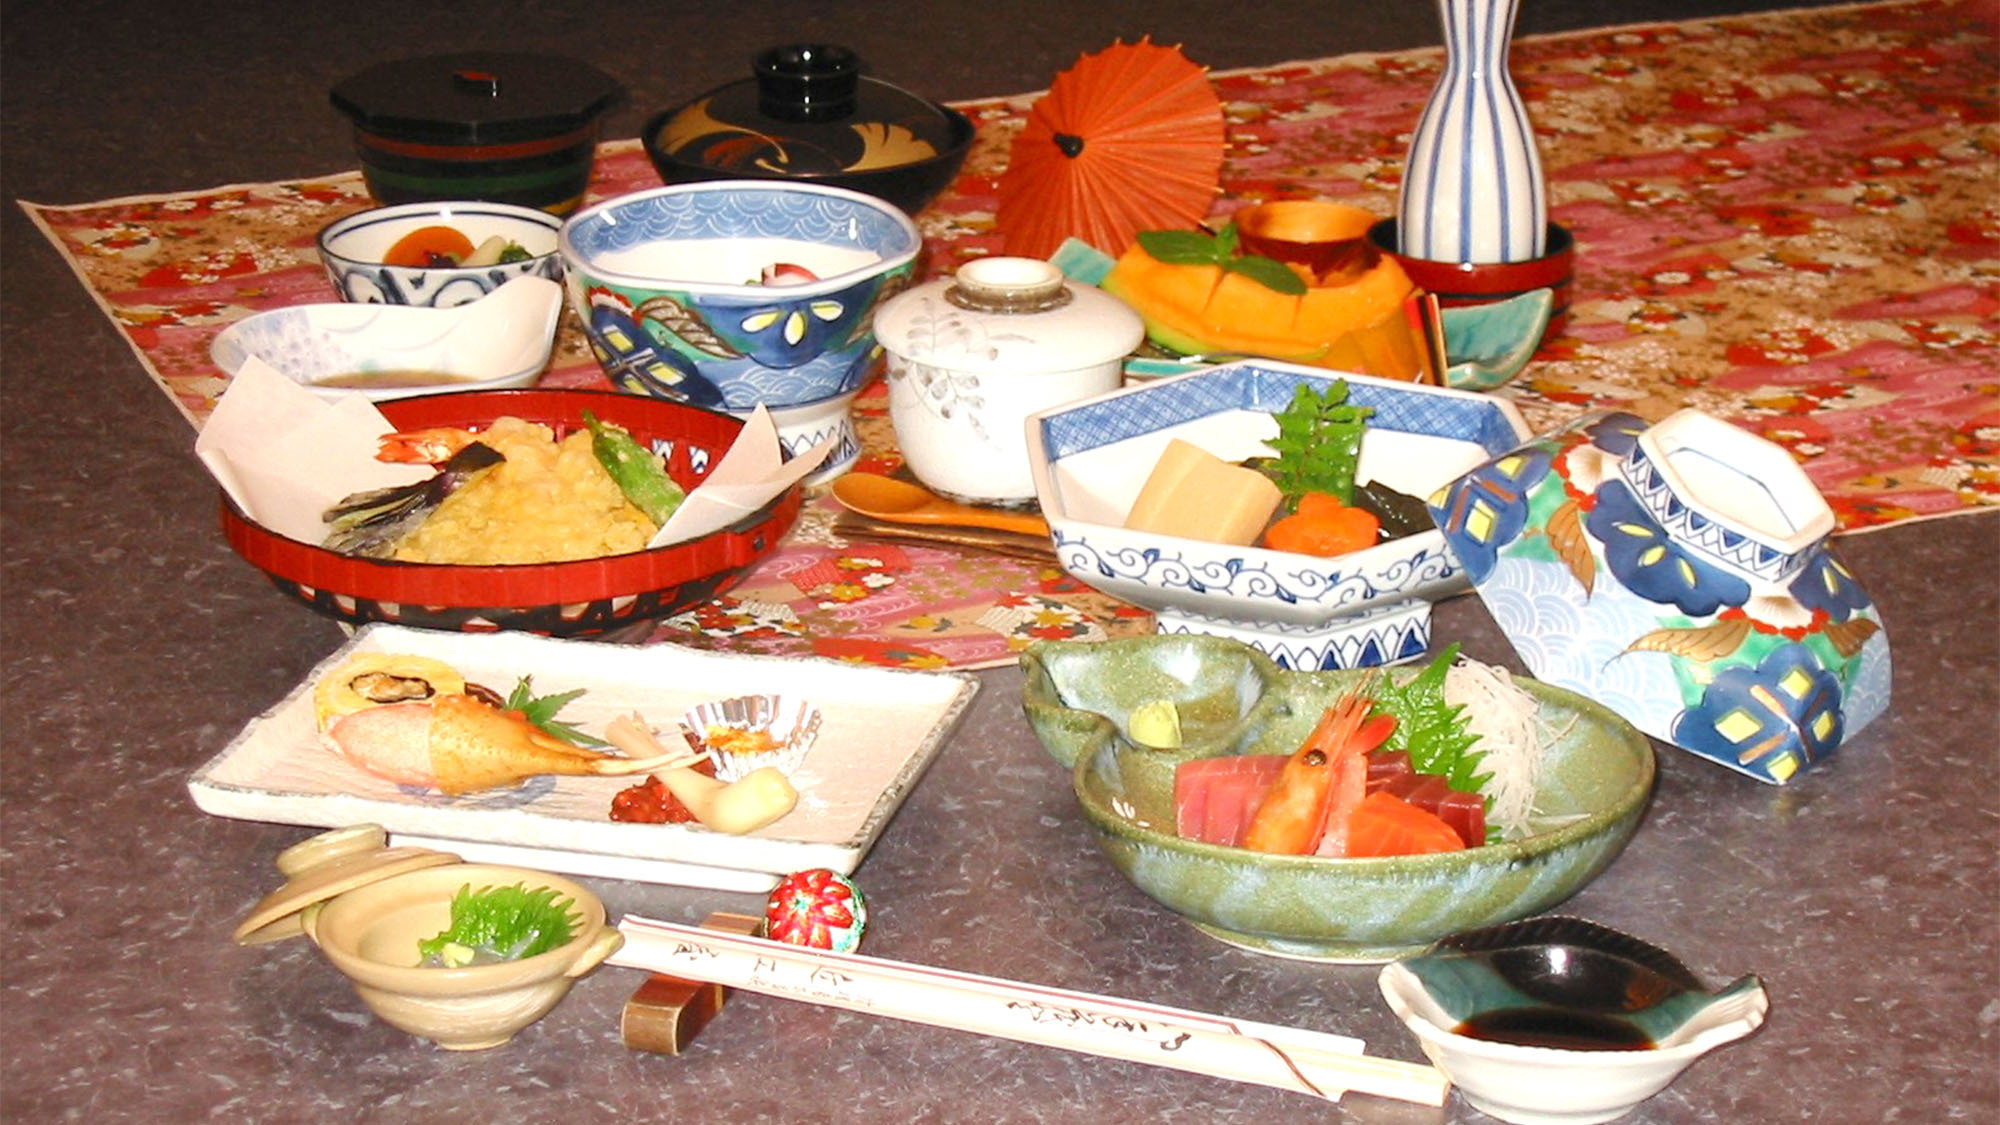 ・夕食は小田原の市場で仕入れた新鮮なお刺身や、季節の旬な食材を使用した和食膳をご用意致します